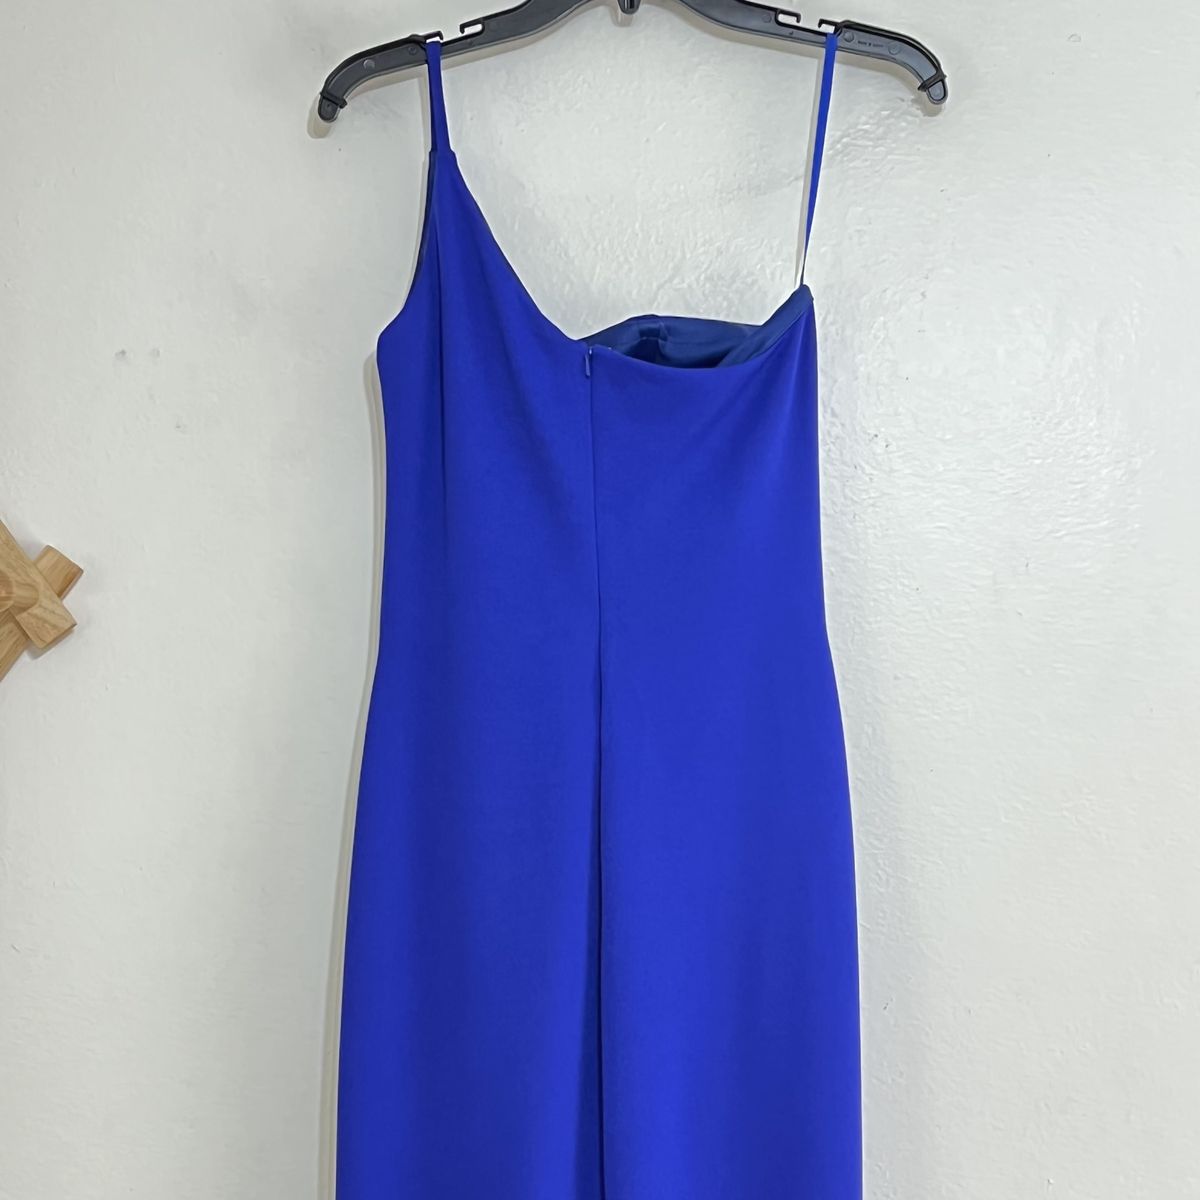 Style 28176 La Femme Size 10 One Shoulder Royal Blue Side Slit Dress on Queenly